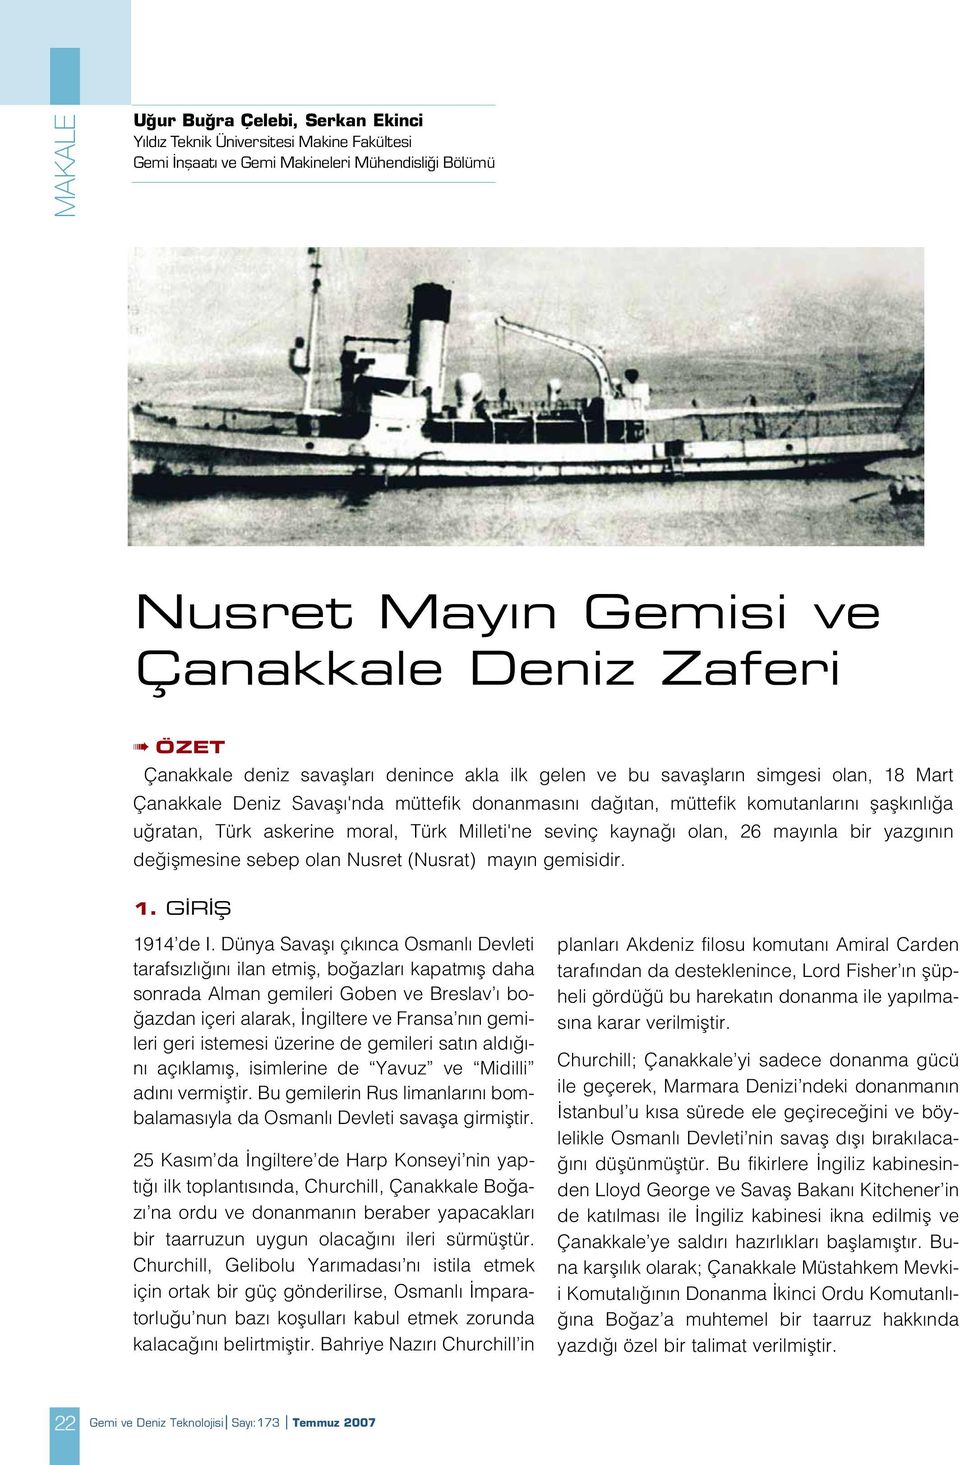 Türk Milleti'ne sevinç kayna olan, 26 may nla bir yazg n n de iflmesine sebep olan Nusret (Nusrat) may n gemisidir. 1. G R fi 1914 de I.